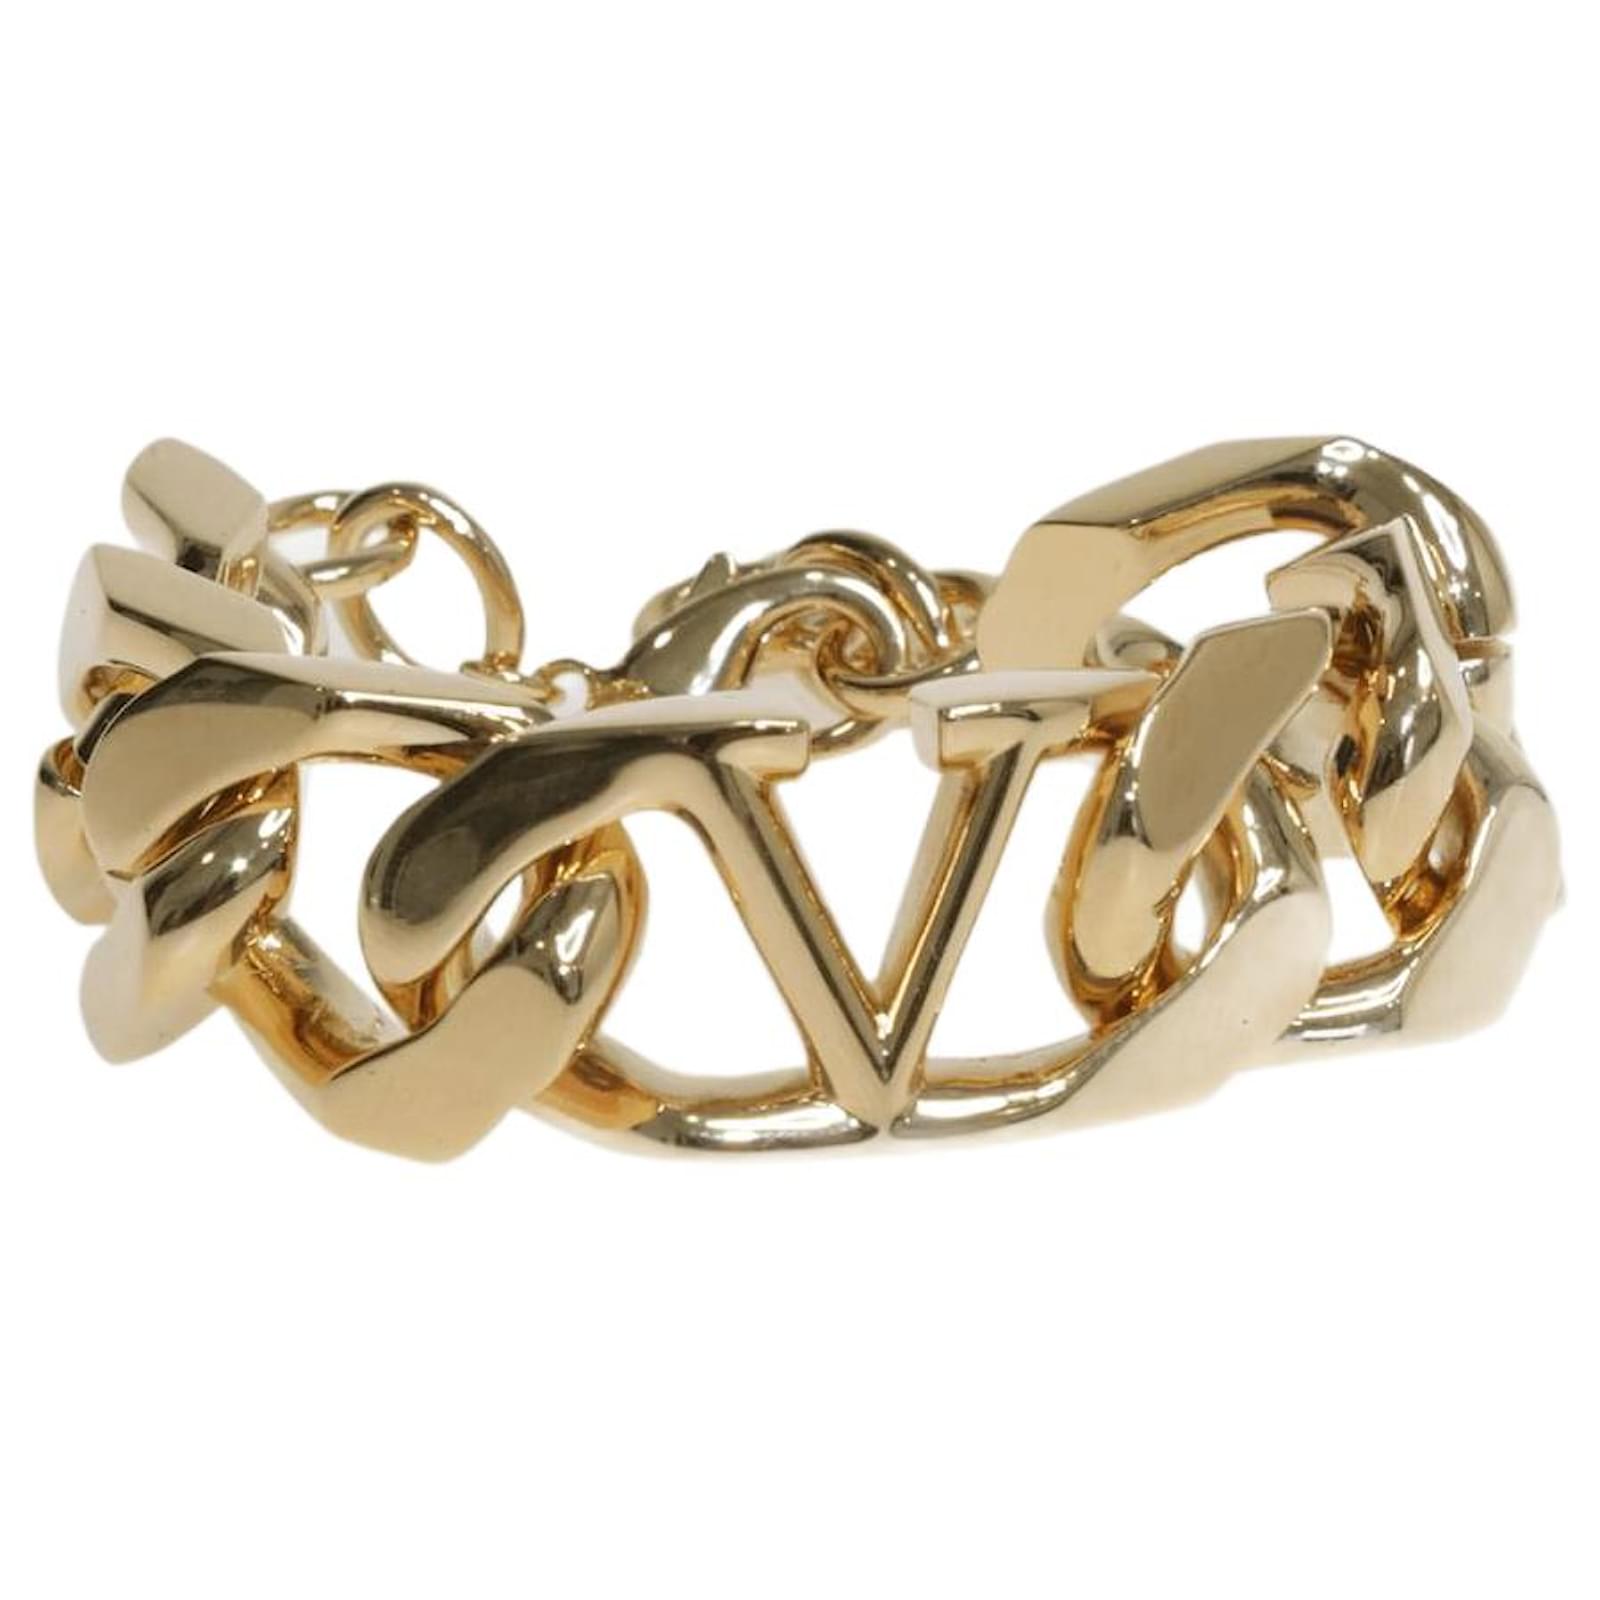 Louis Vuitton Black/Gold Dauphine Bracelet 19